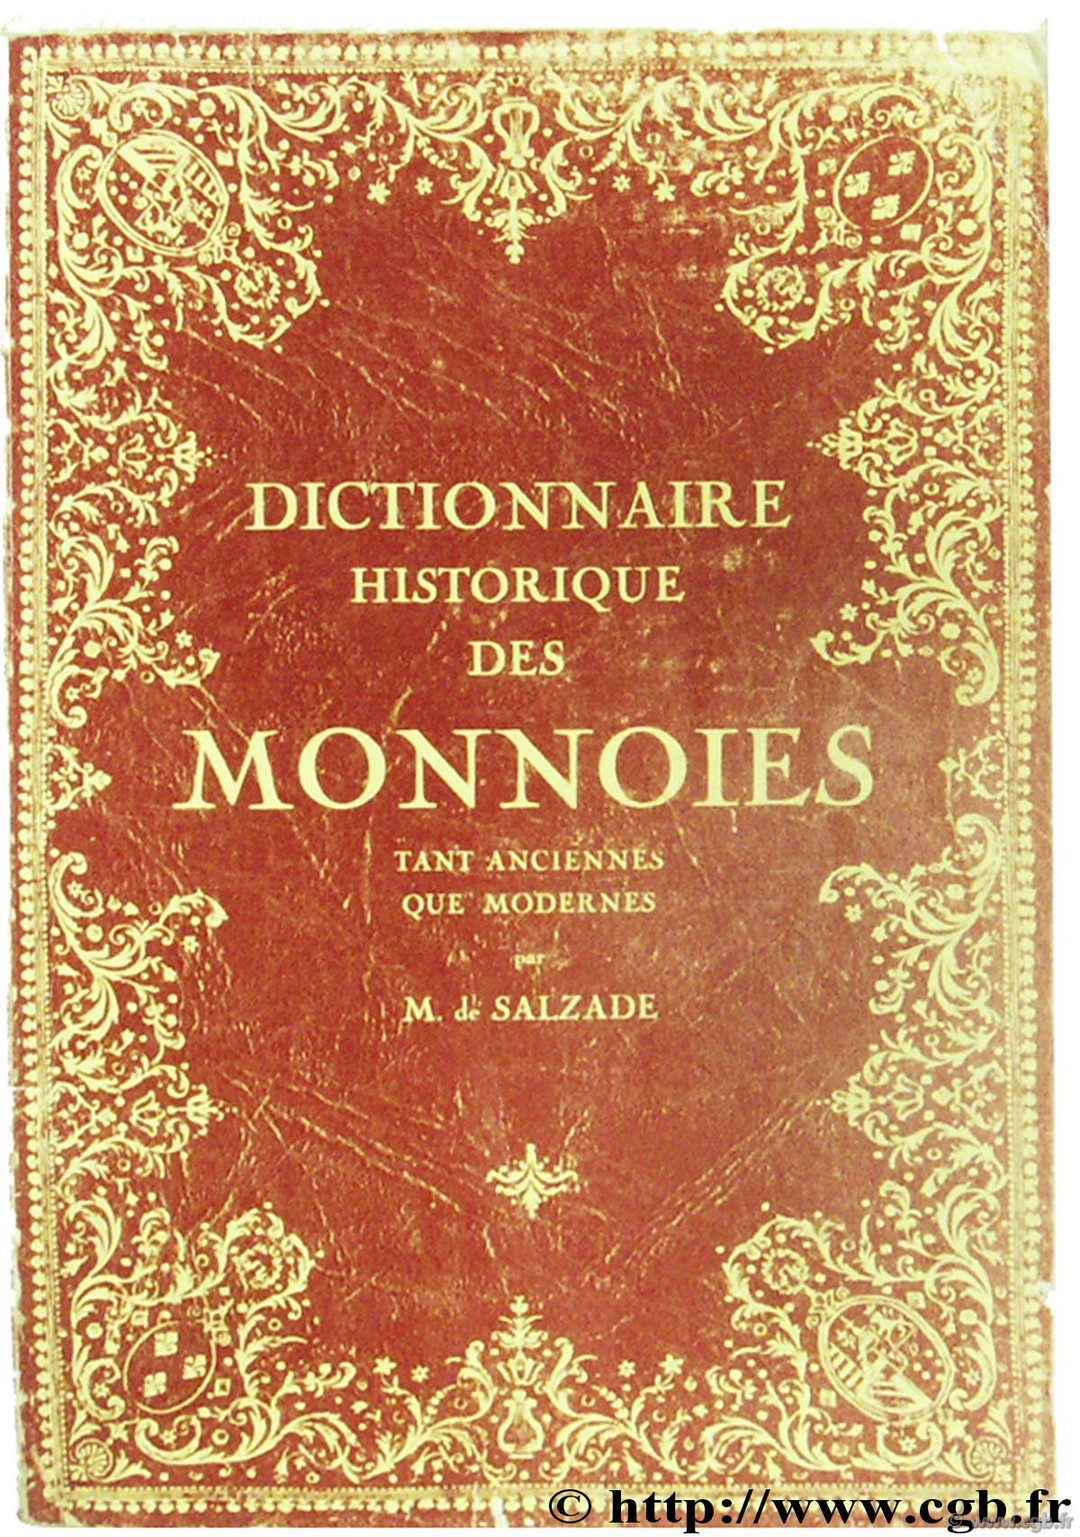 Dictionnaire historique des monnoies tant anciennes que modernes DE SALZADE M.